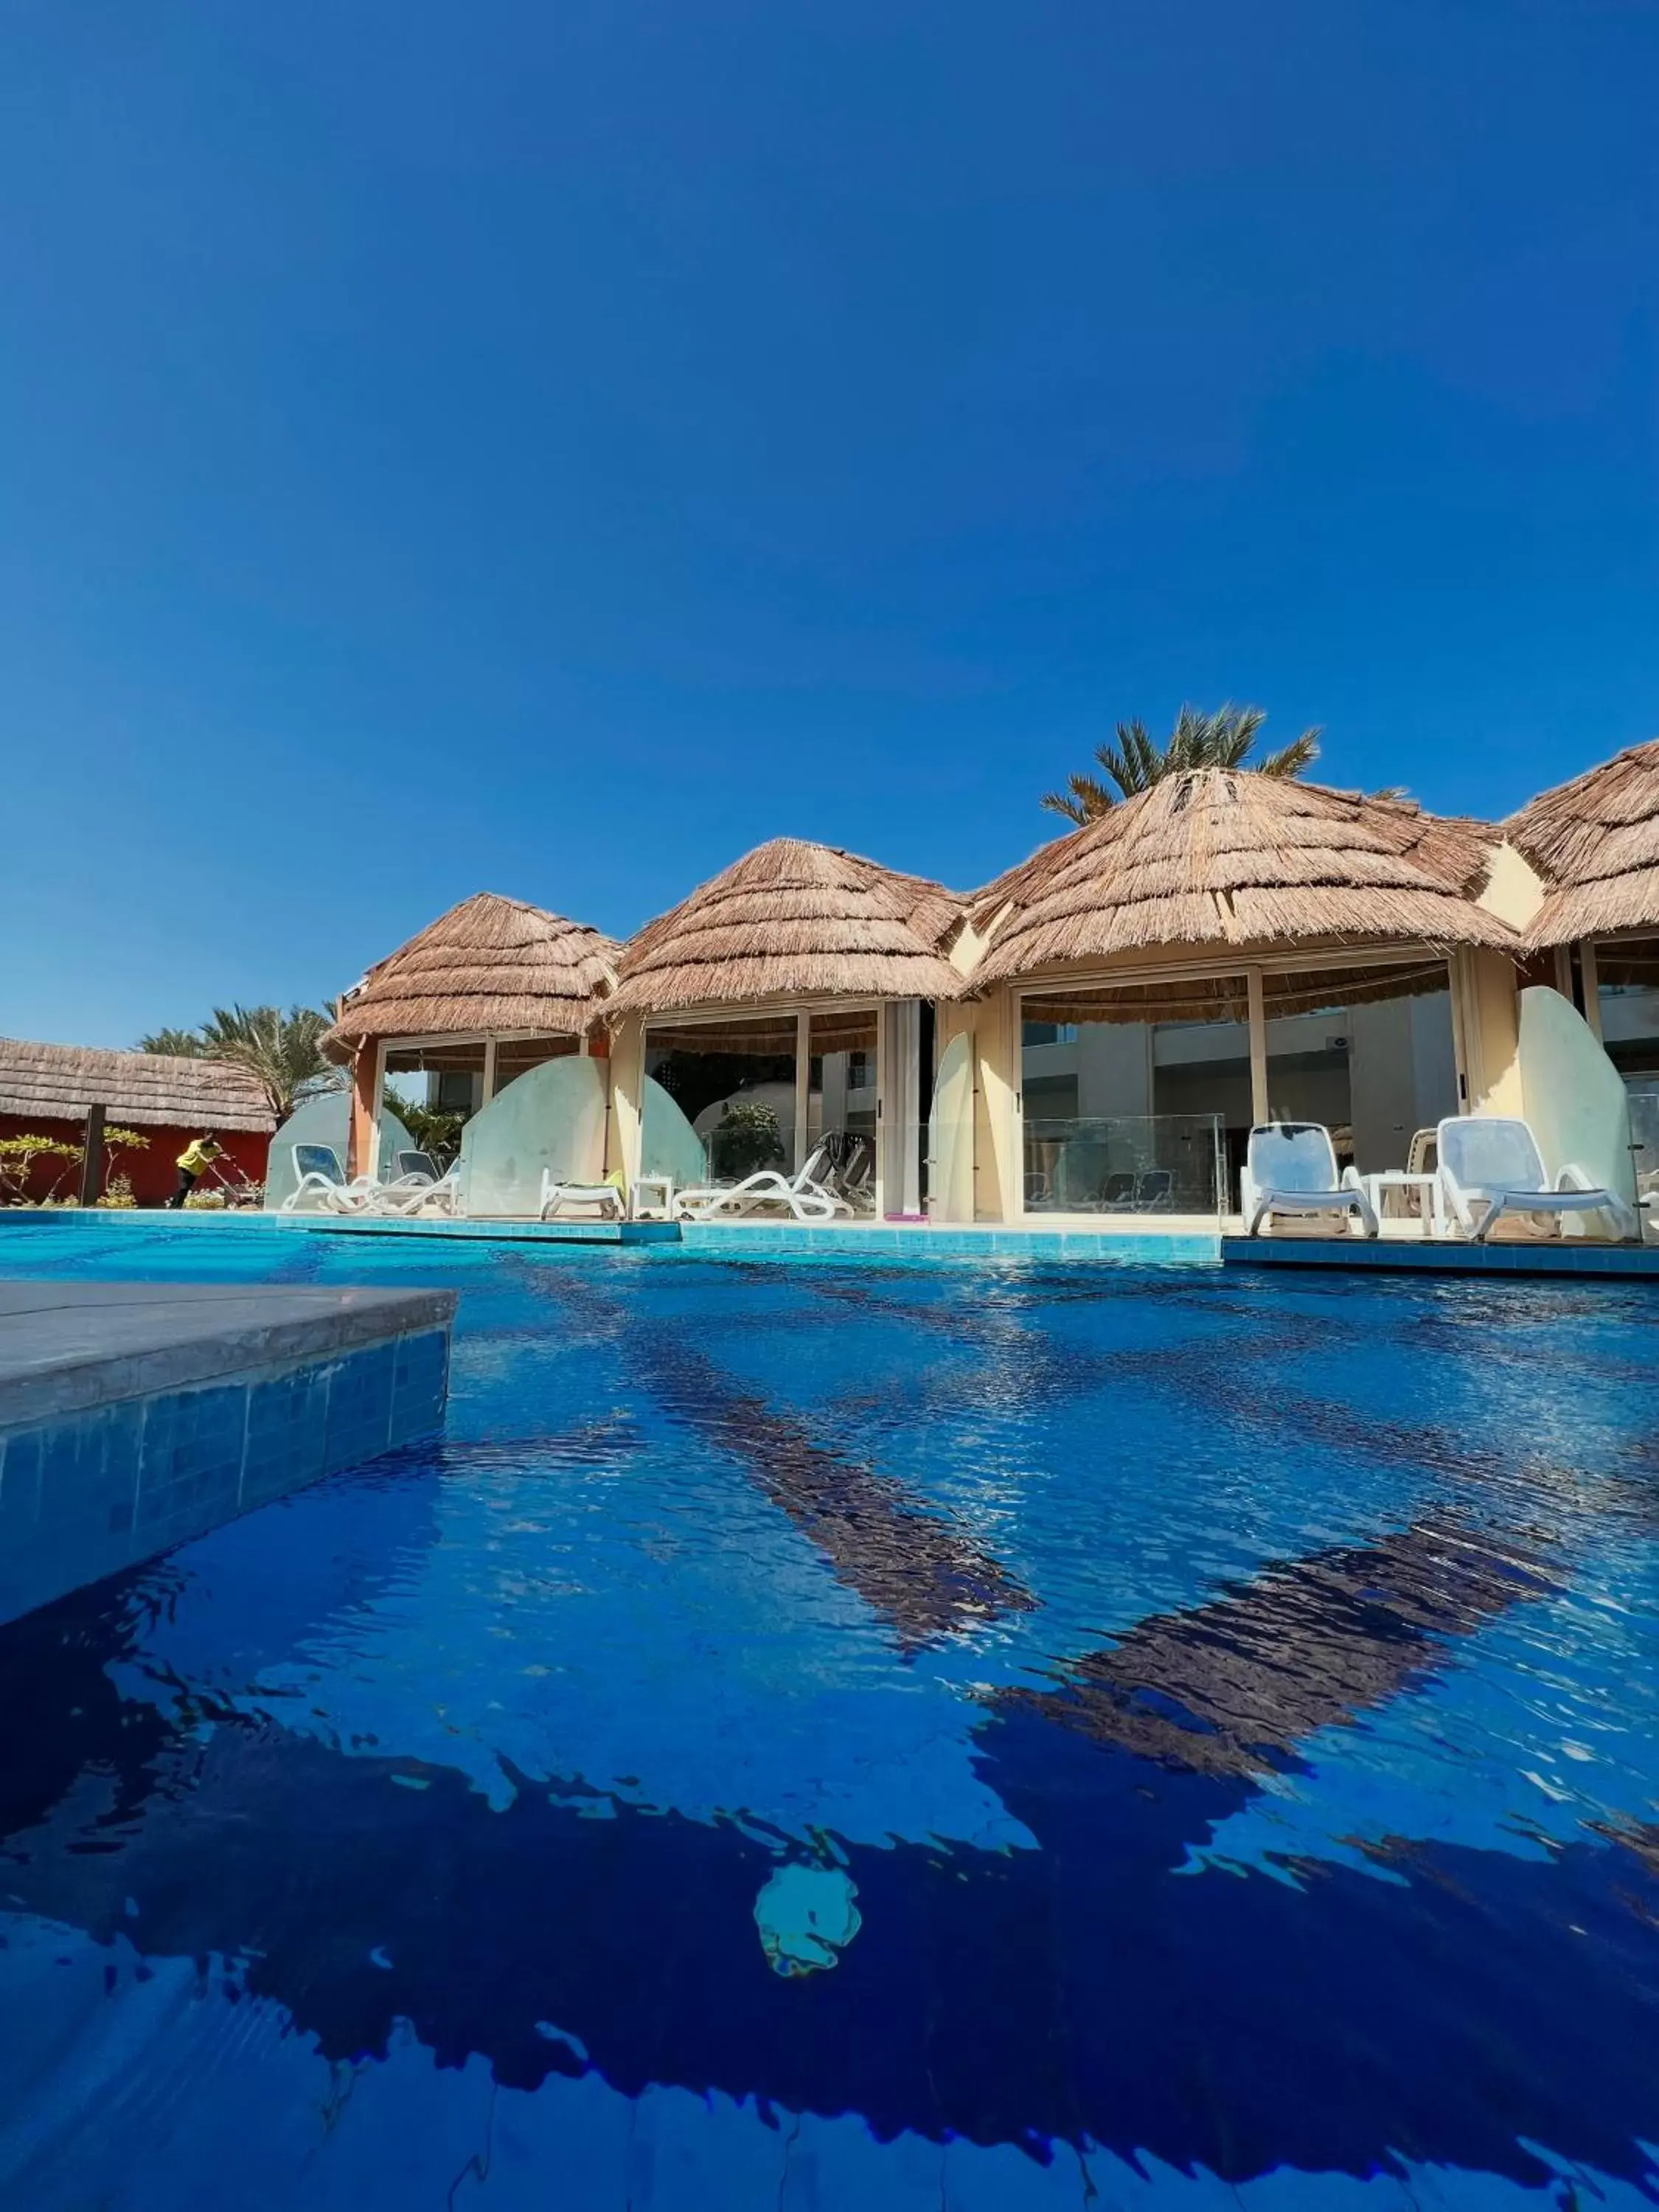 Swimming Pool in Panorama Bungalows Resort El Gouna